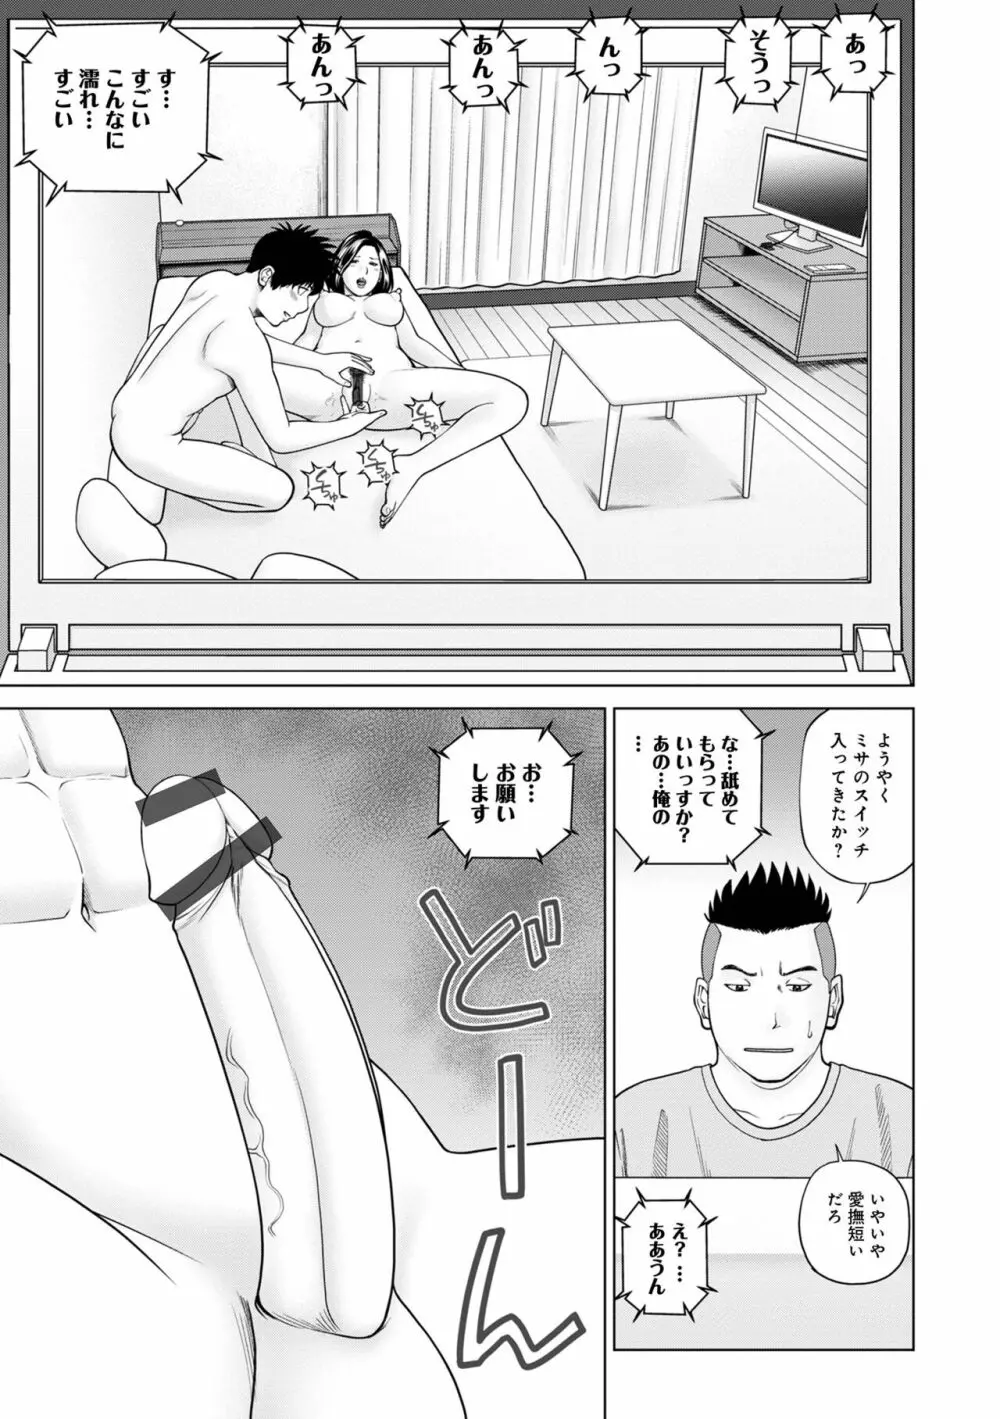 WEB版コミック激ヤバ! Vol.155 13ページ